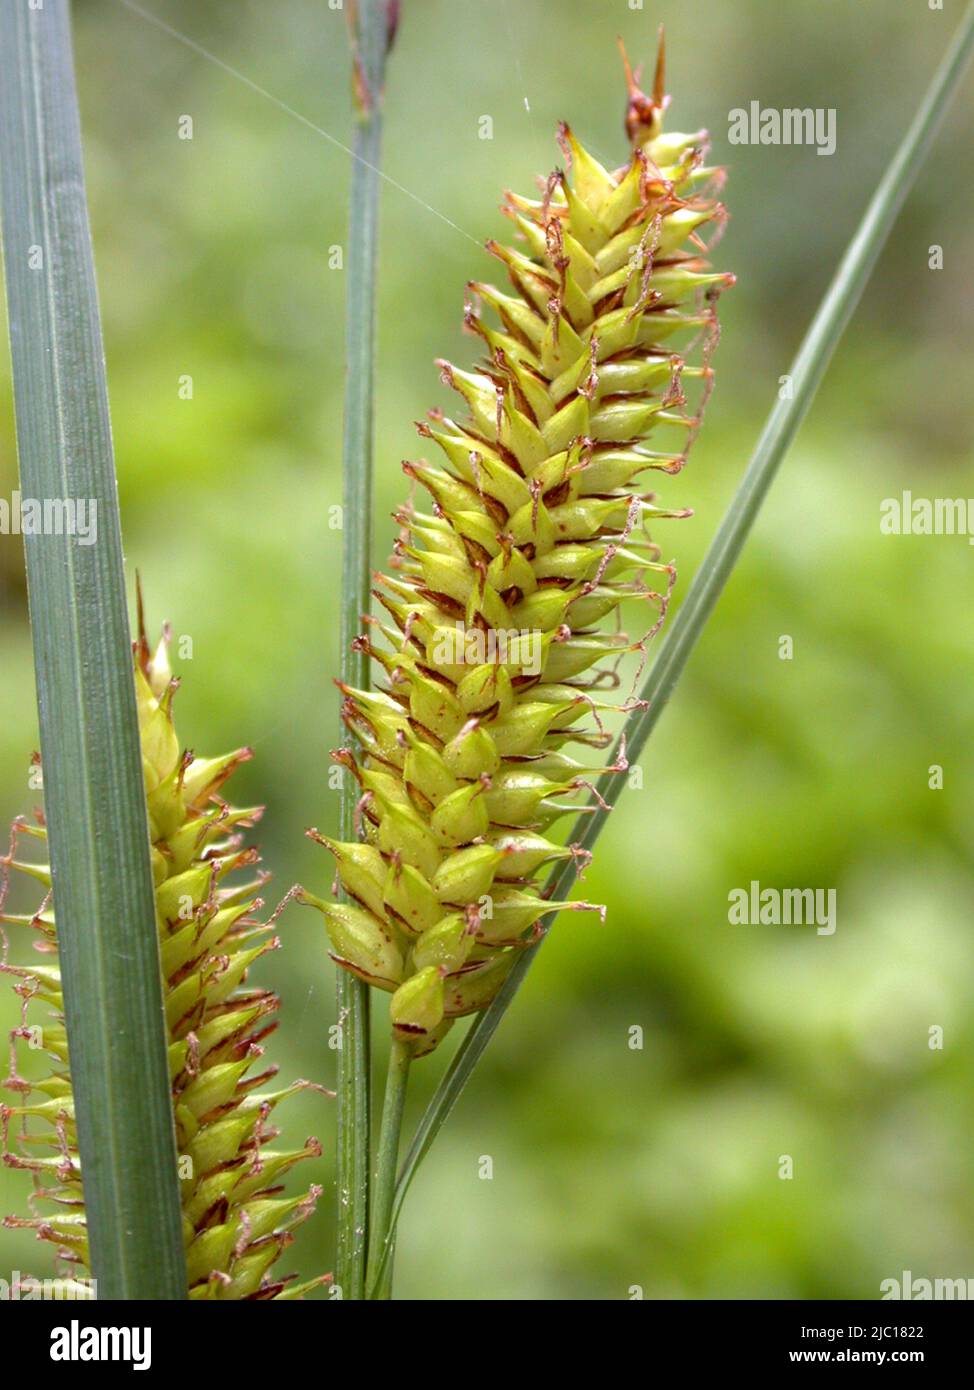 beaked sedge, bottle sedge (Carex rostrata), infructescence, Germany Stock Photo